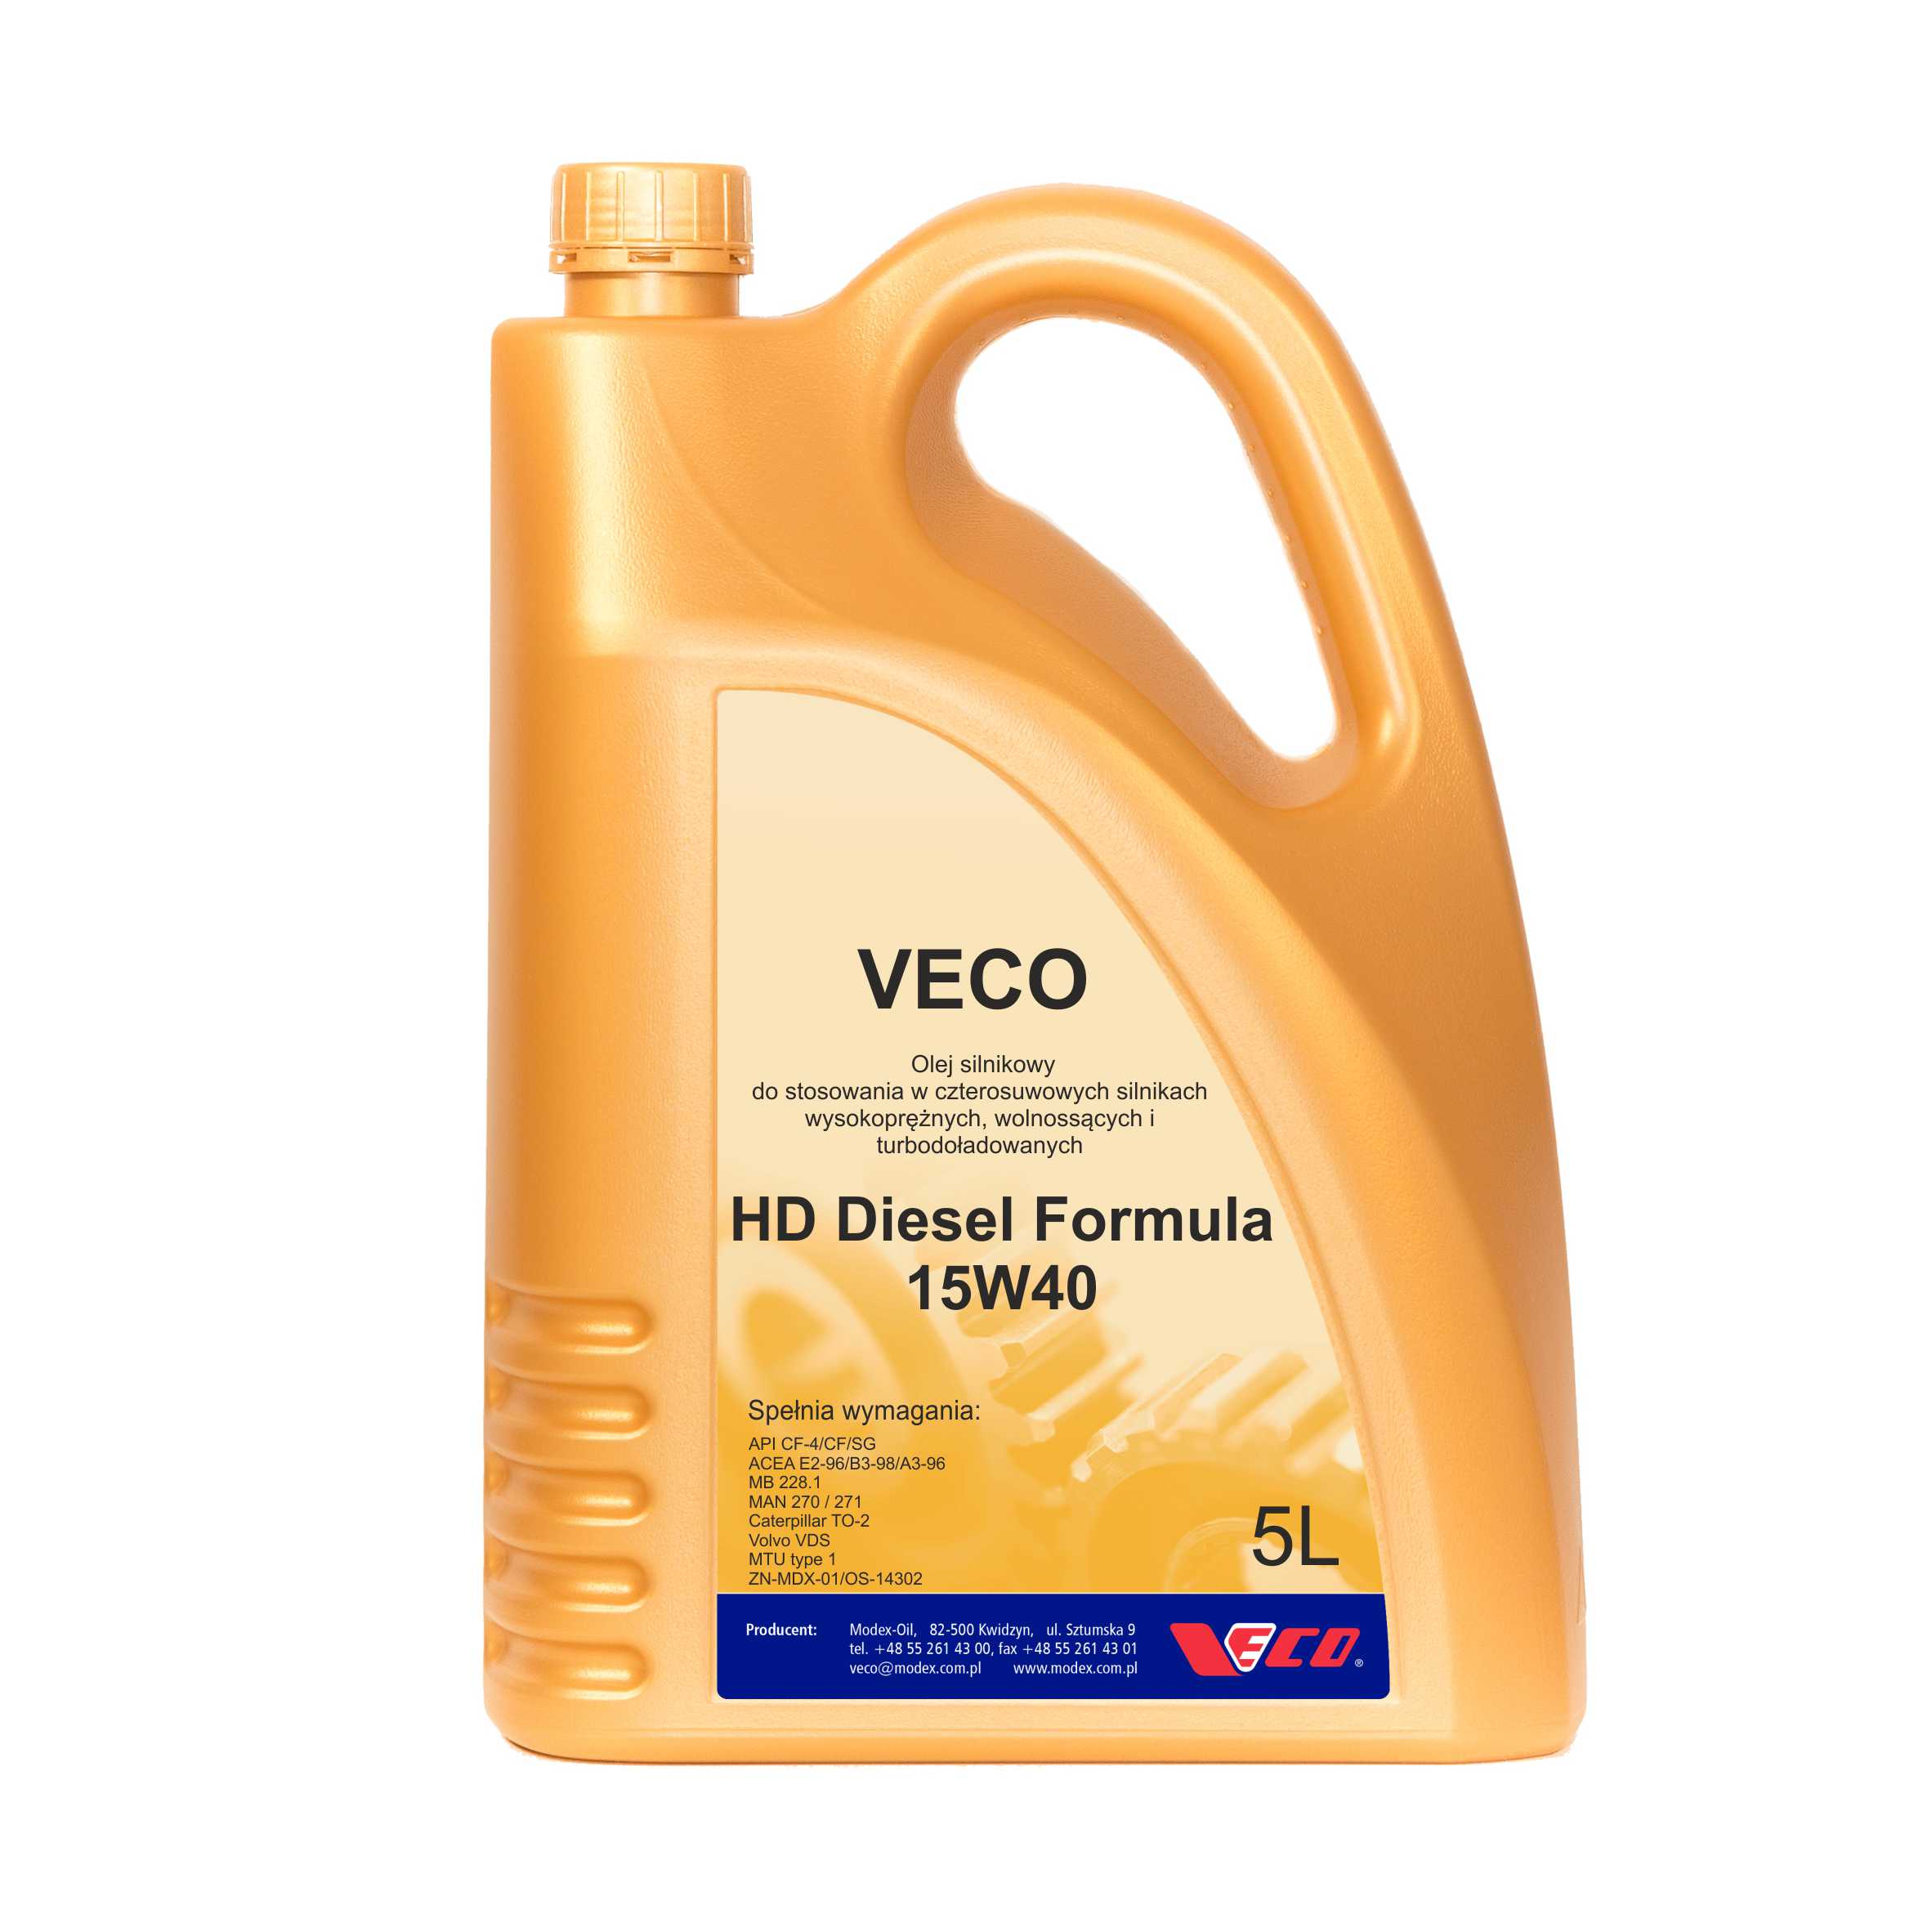 VECO HD Diesel Formula 15W40 opak 5L